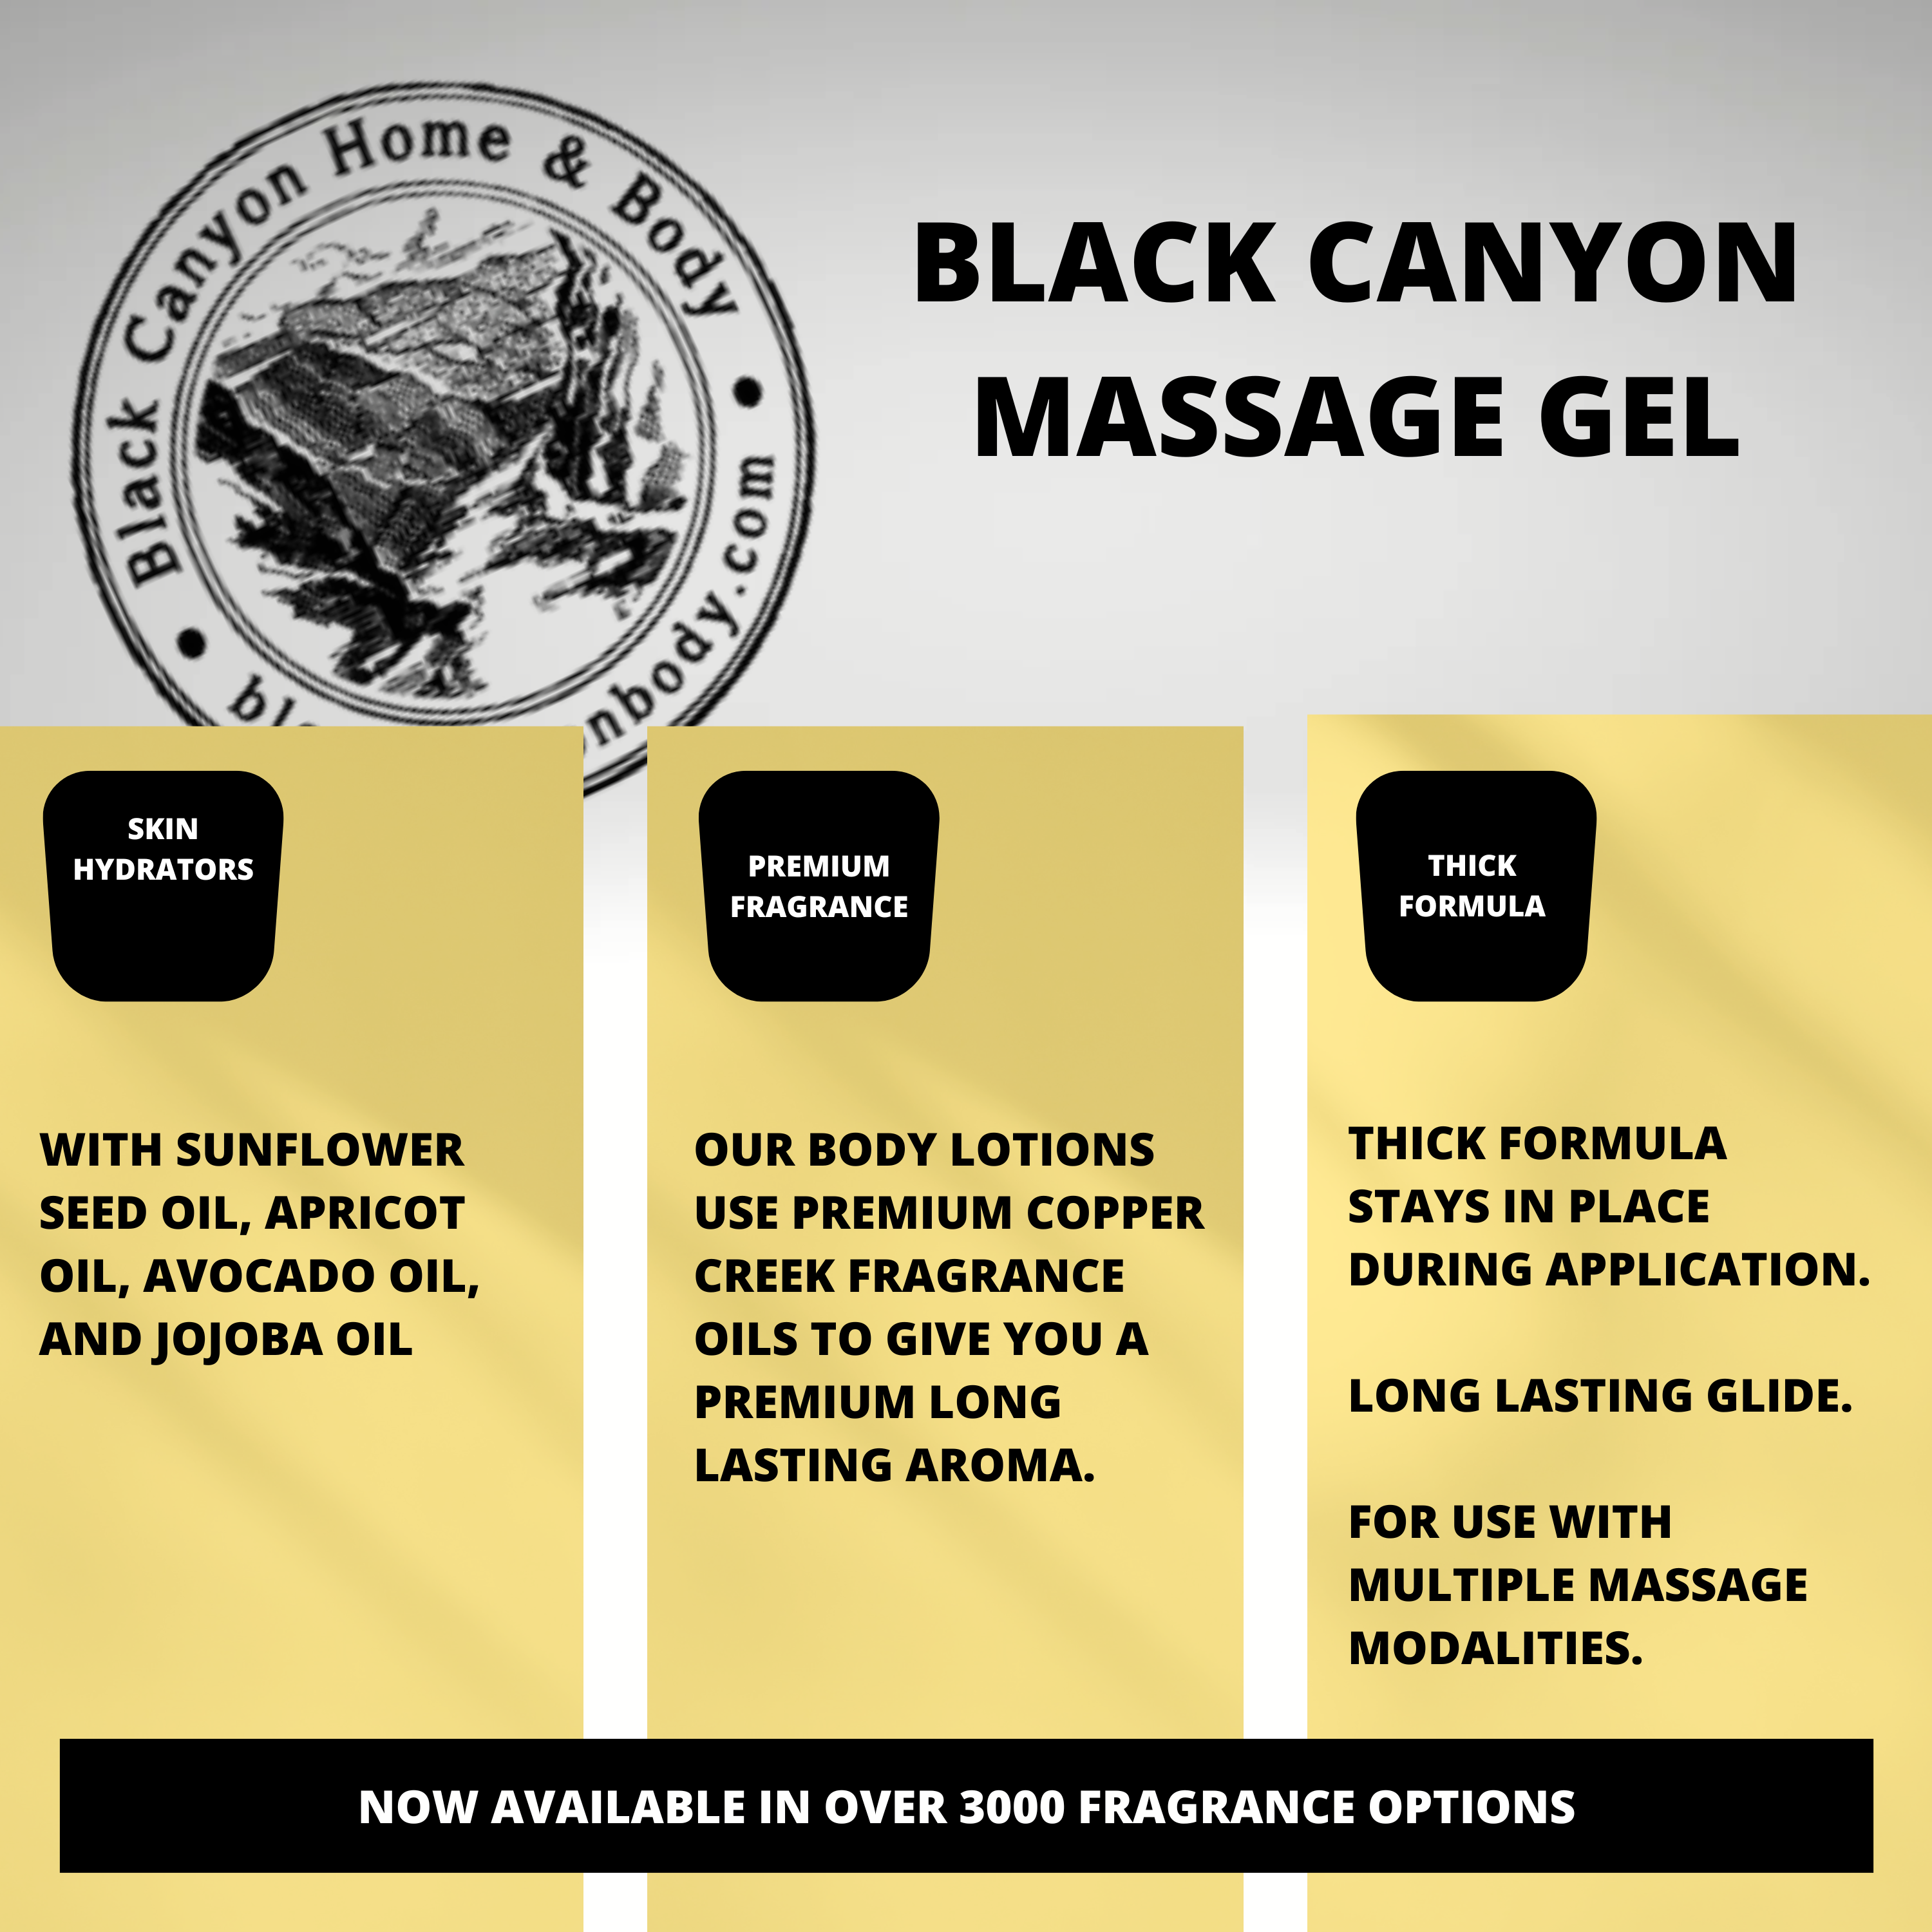 Black Canyon Black Fig & Honey Scented Massage Gel